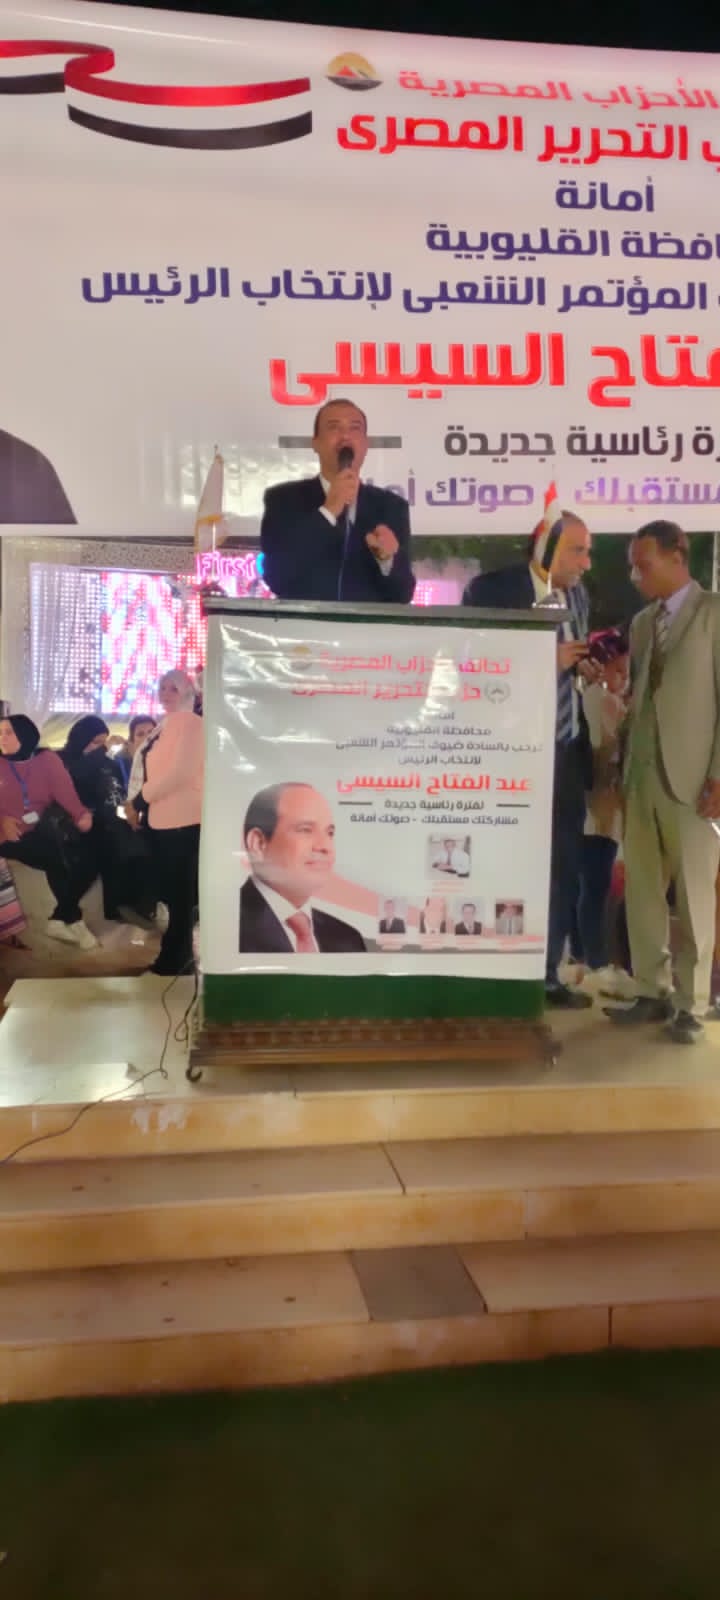 حزب التحرير المصري ينظم مؤتمرًا لدعم الرئيس السيسي (1)